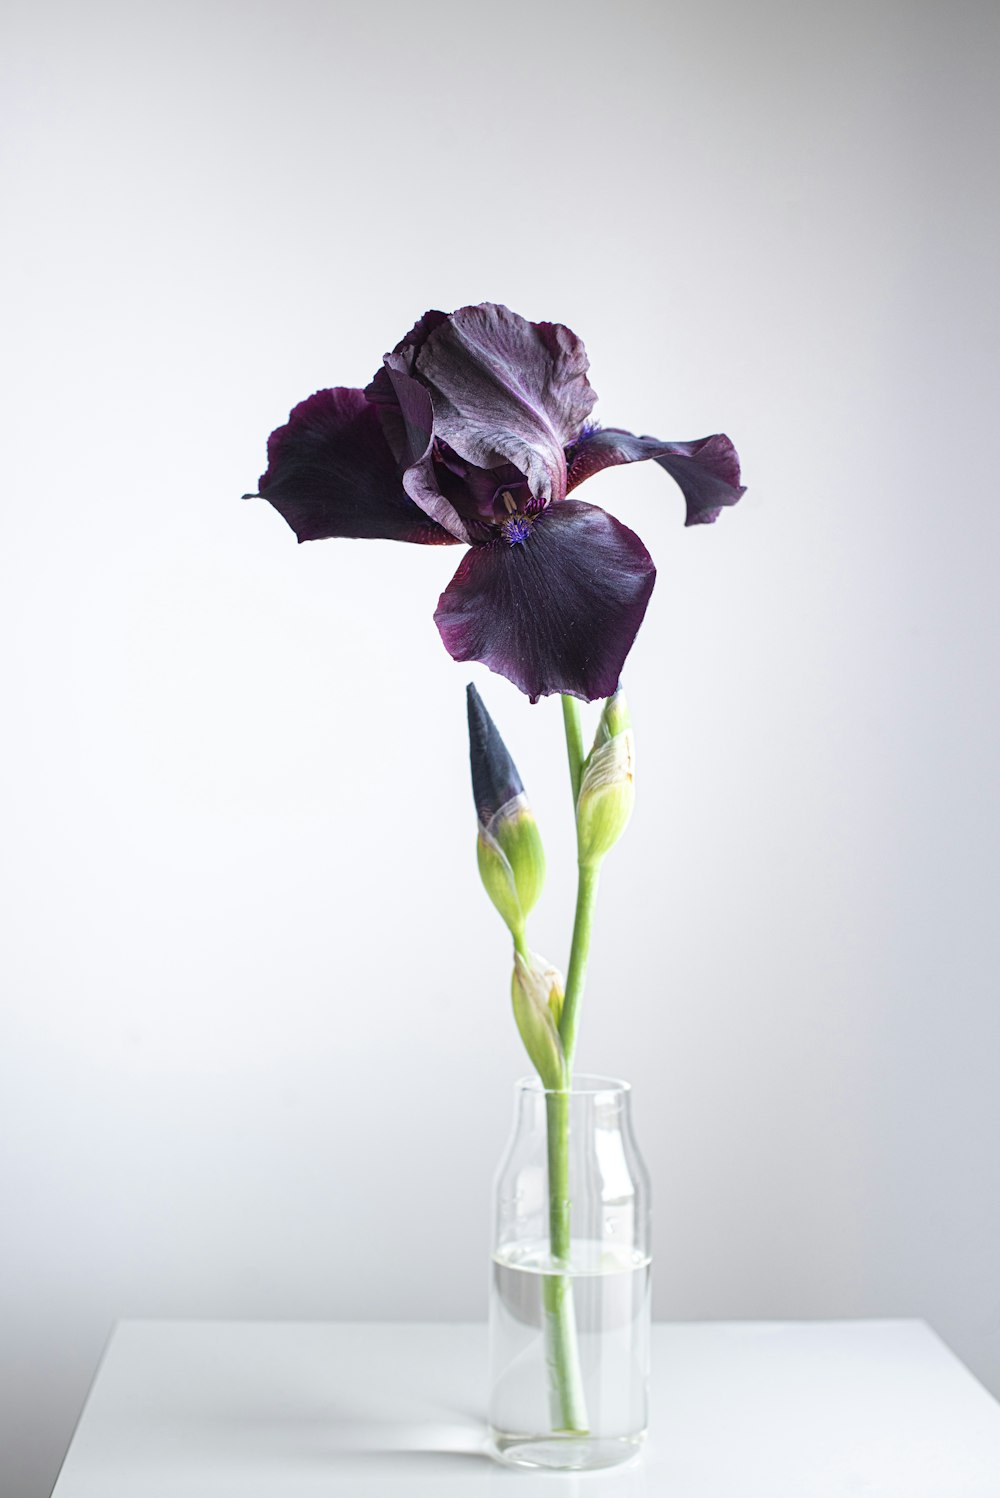 透明なガラスの花瓶に咲いた紫色の花